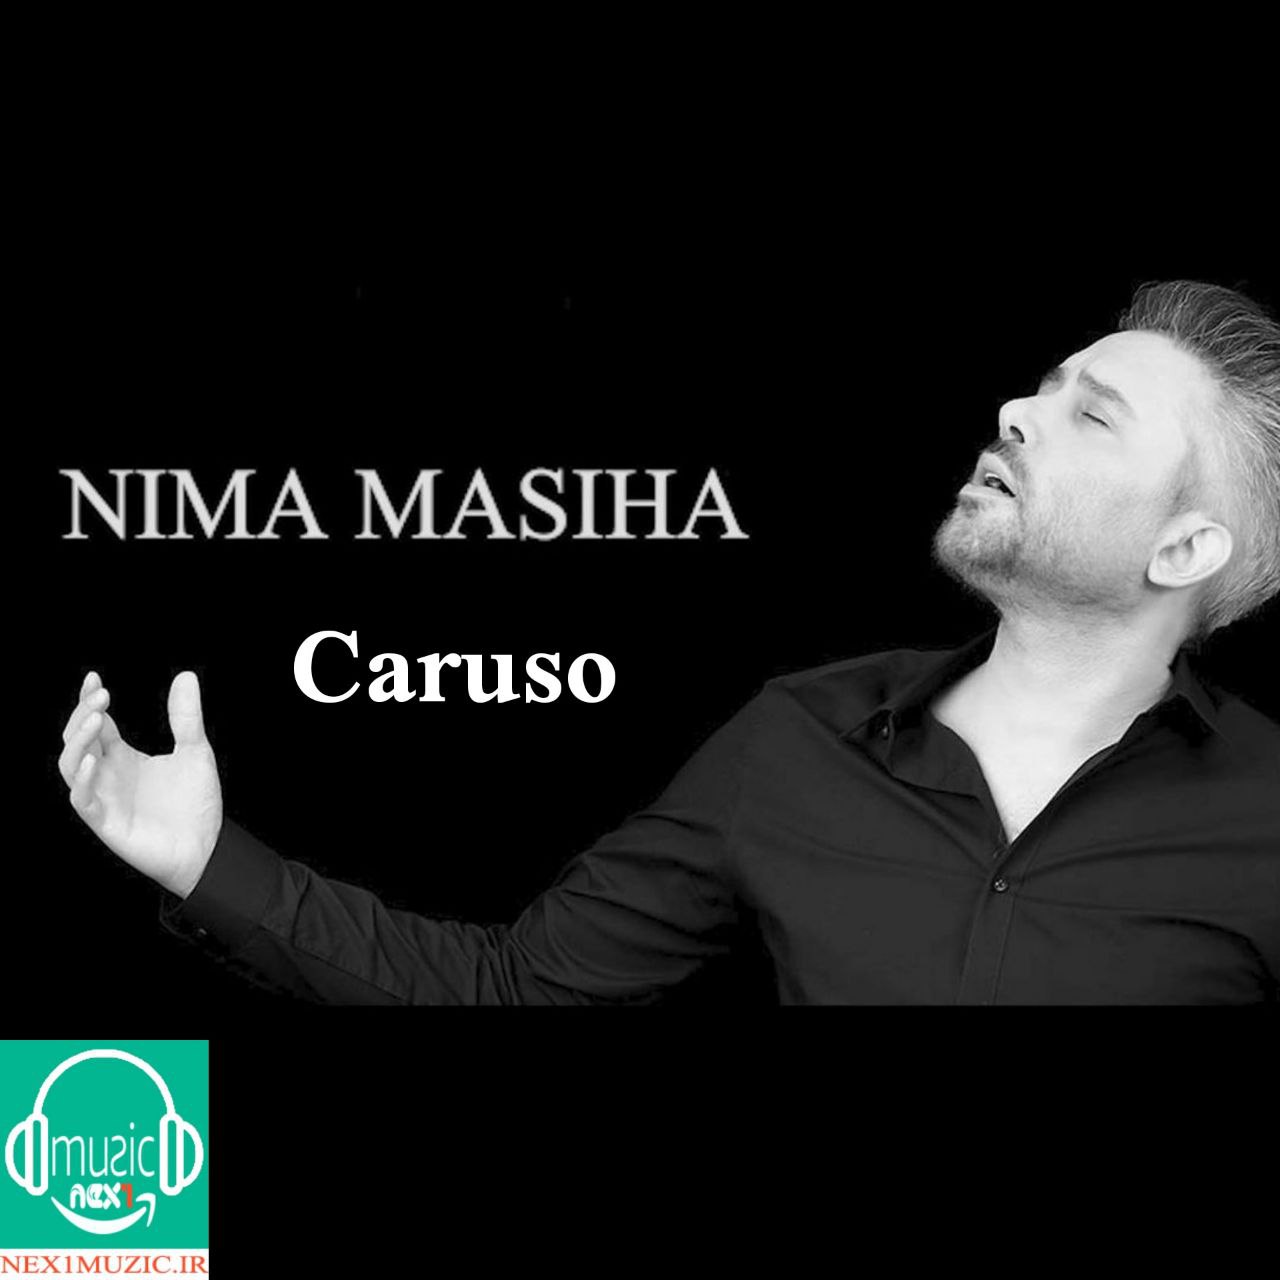 آهنگِ جدید و زیبایِ نیما مسیحا به نامِ «Caruso»